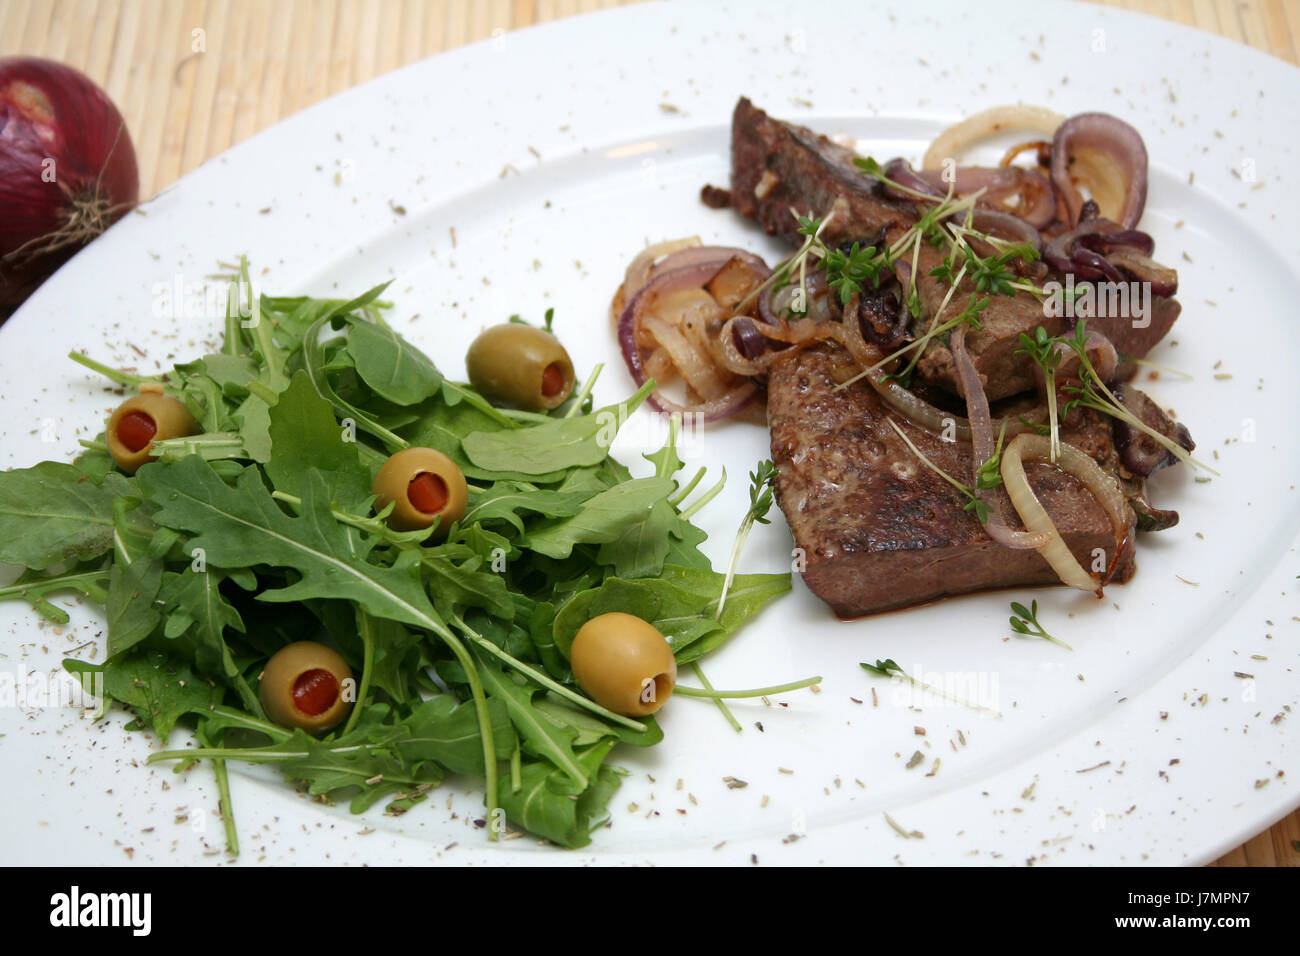 Alimentare bovina piatto unico olive insalata di fegato di alimenti carnei aliment bovini vegetale Foto Stock